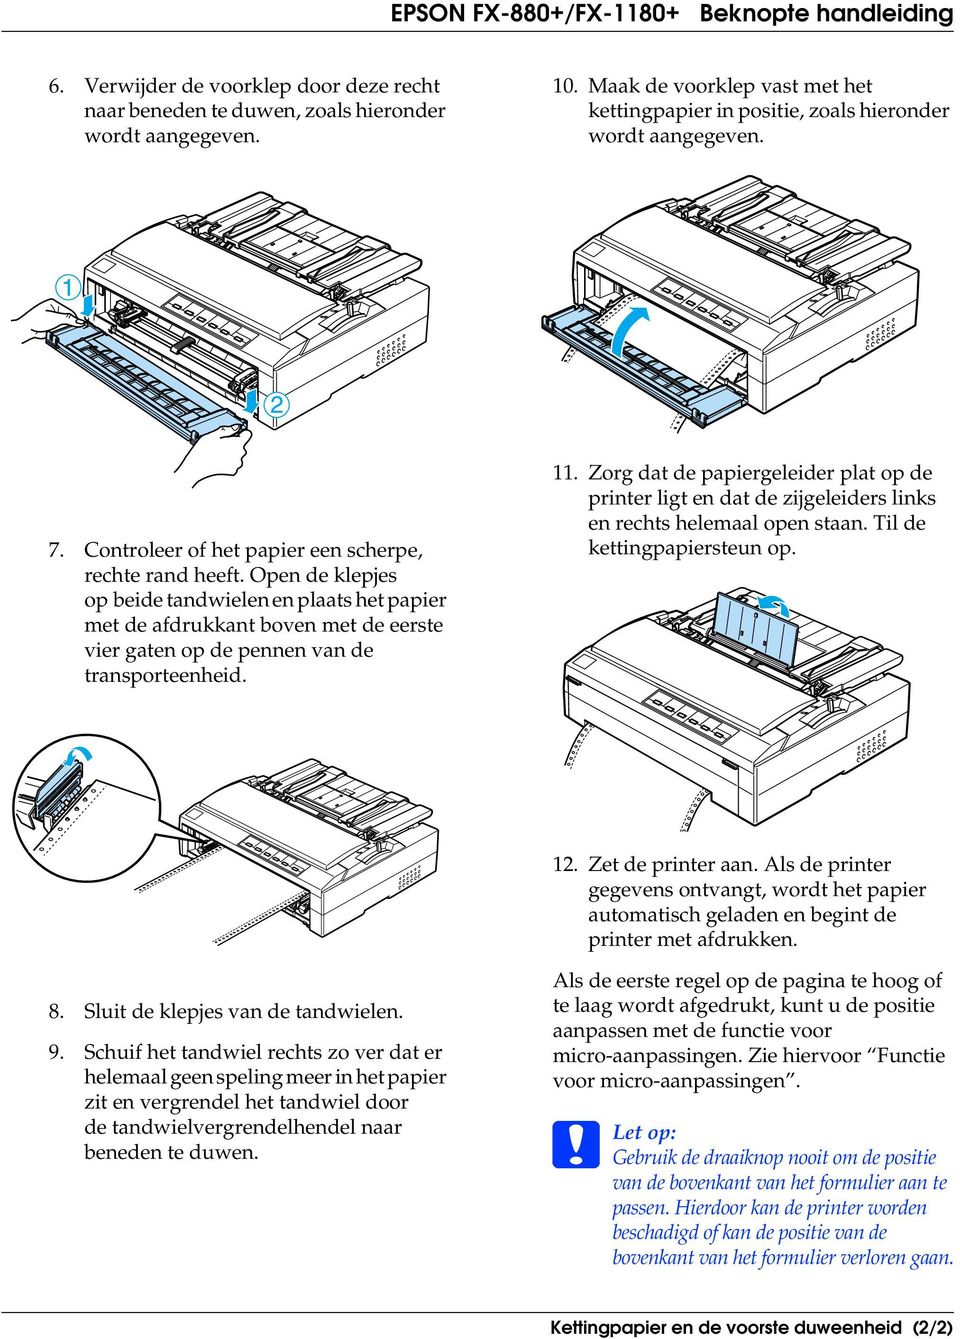 11. Zorg dat de papiergeleider plat op de printer ligt en dat de zijgeleiders links en rechts helemaal open staan. Til de kettingpapiersteun op. 12. Zet de printer aan.